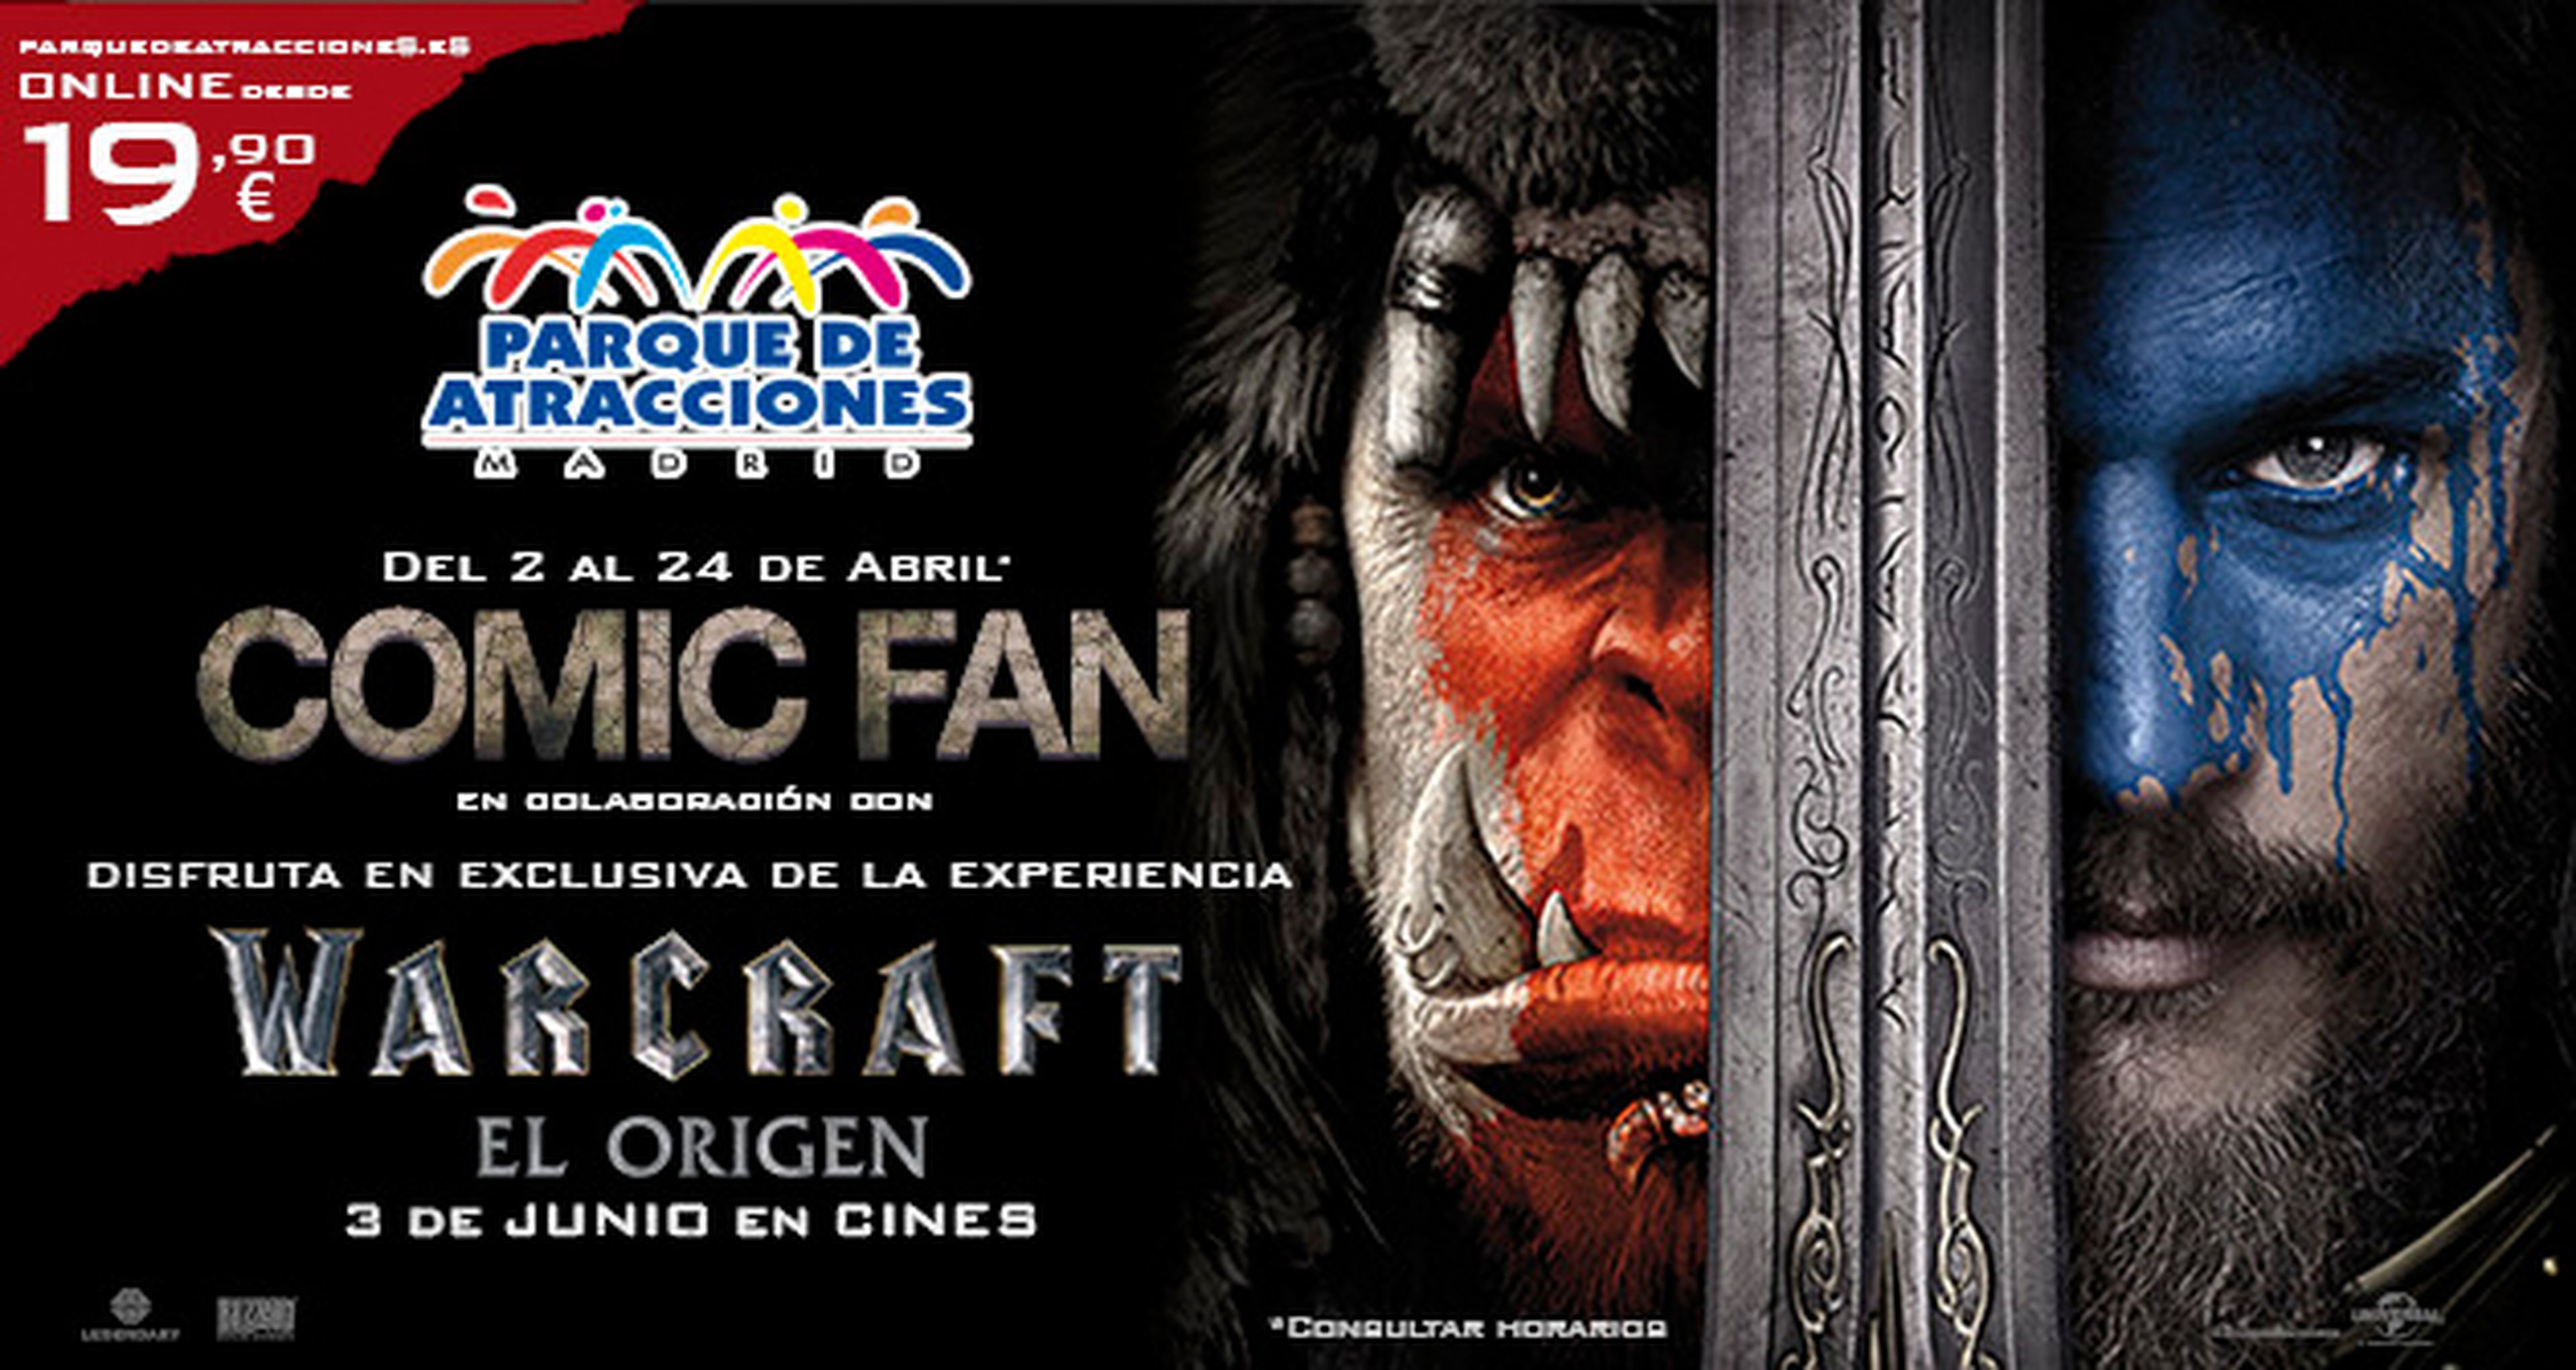 Warcraft - Consigue una entrada doble para la Comic Fan del Parque de Atracciones de Madrid